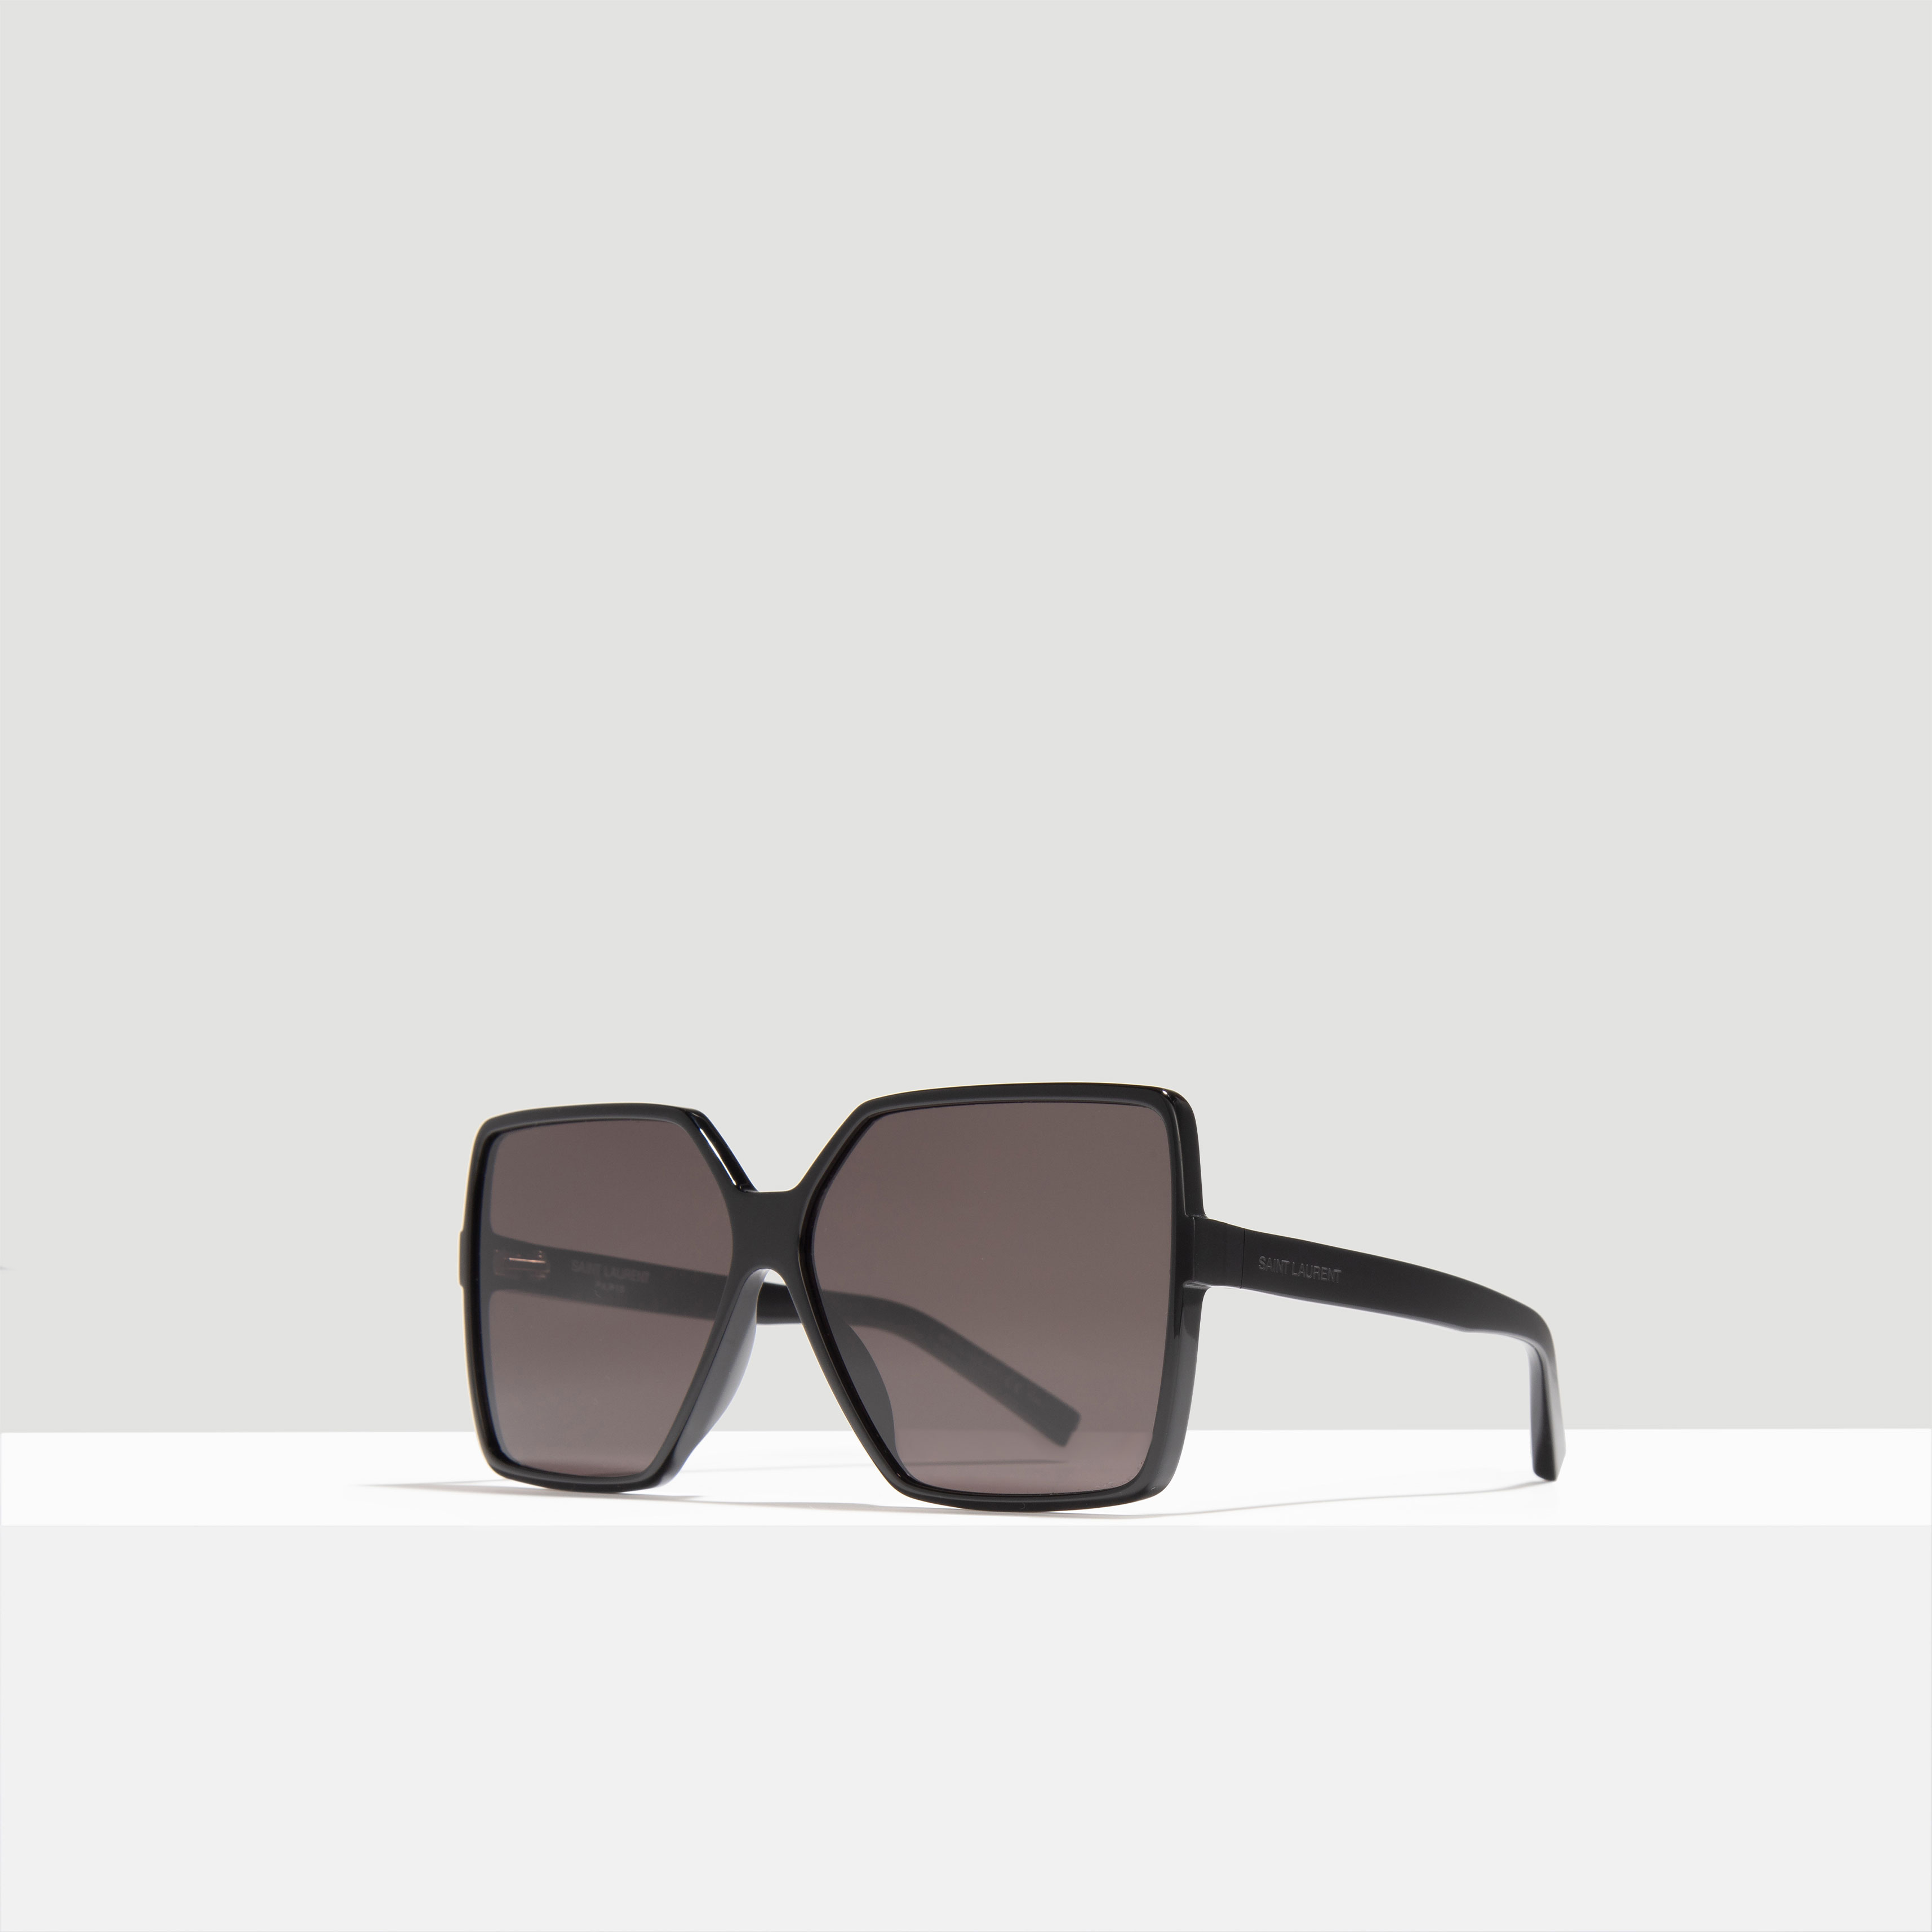 Sunglasses Erie/S en brown Fashionette Femme Accessoires Lunettes de soleil pour dames 